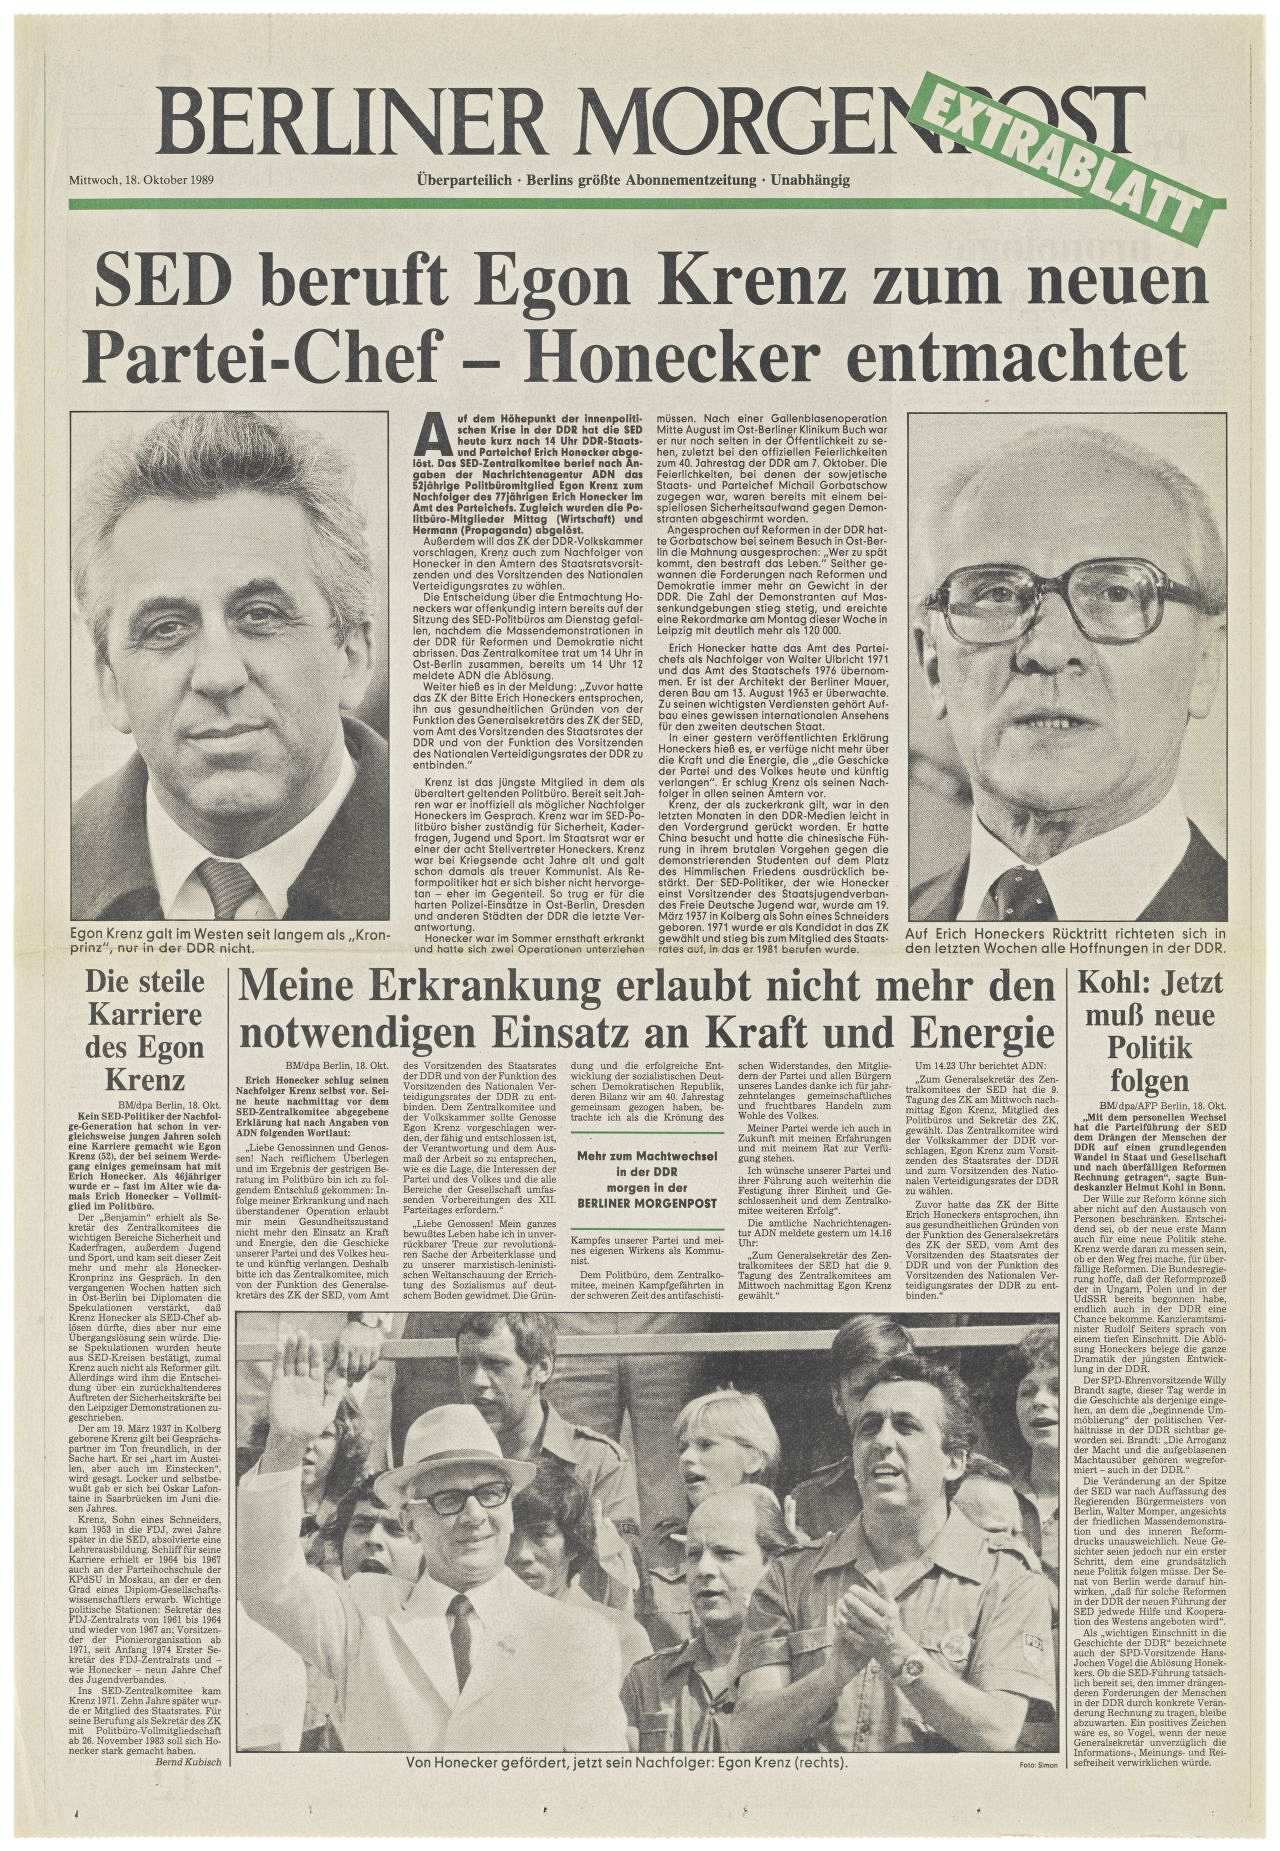 1 Blatt; doppelseitig bedruckt; Schlagzeile auf der Titelseite: SED beruft Egon Krenz zum neuen Partei-Chef - Honecker entmachtet; darunter schwarz/weiß-Fotos von Egon Krenz und Erich Honecker.